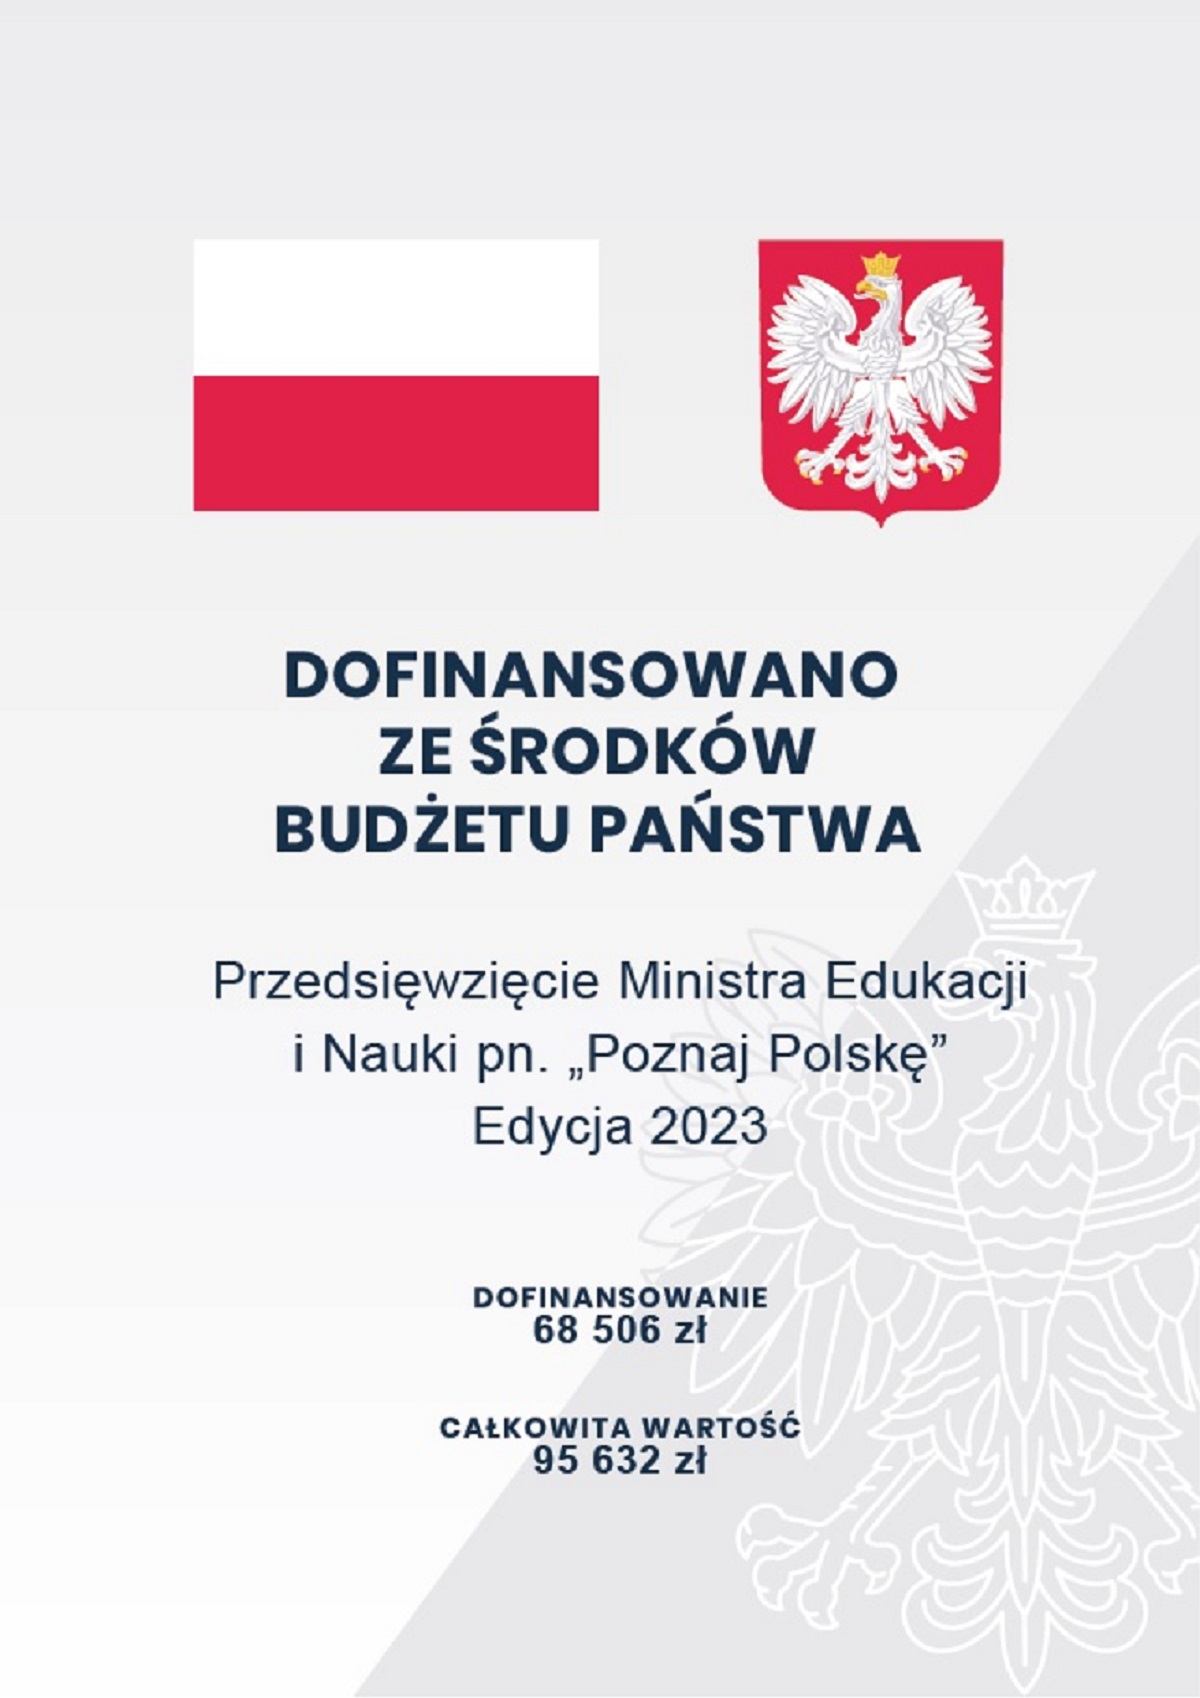 Przedsięwzięcie Ministra Edukacji i Nauki pn. "Poznaj Polskę"